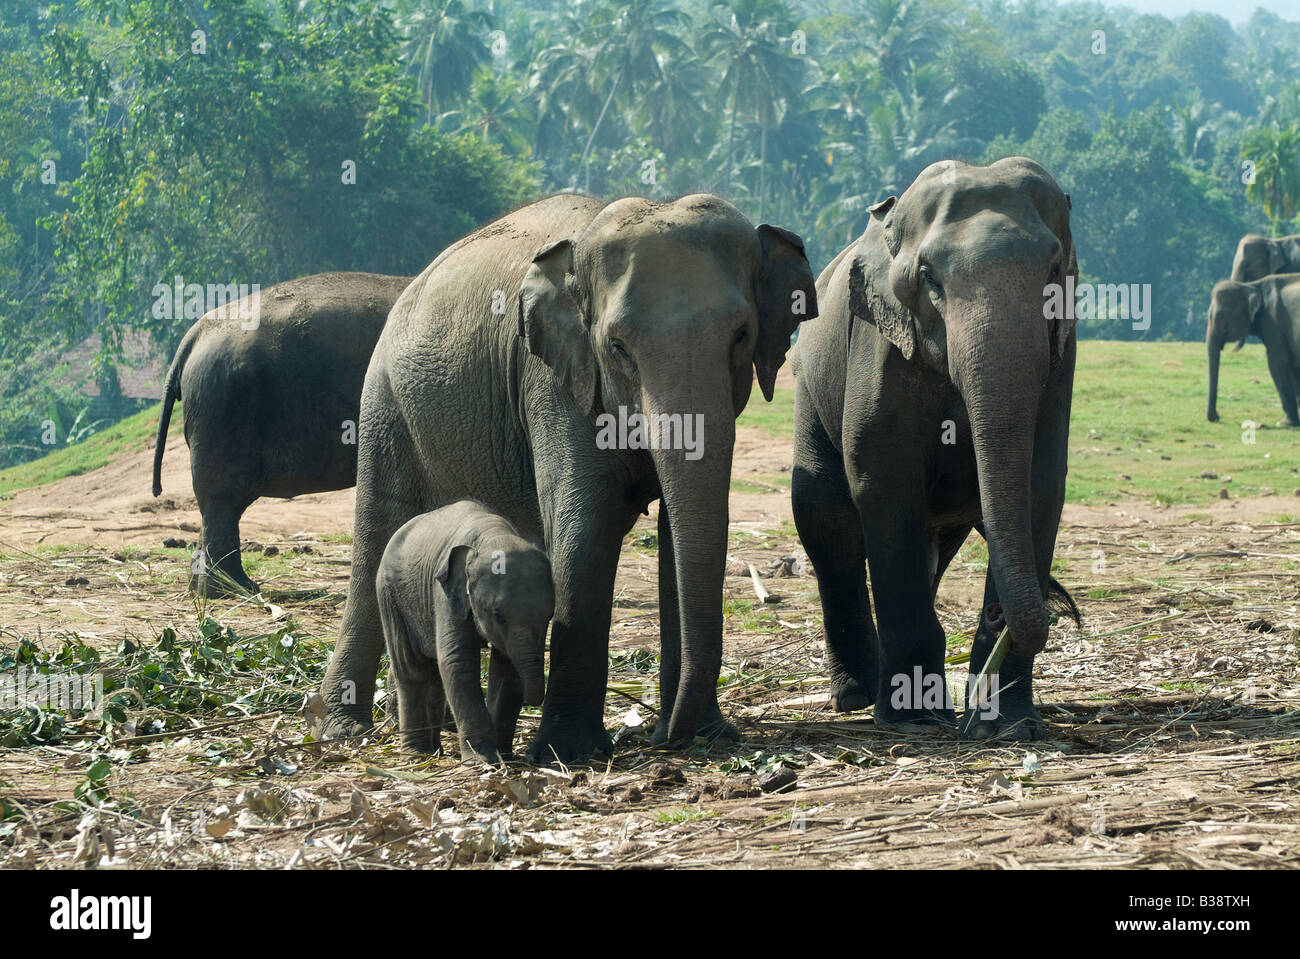 Elephants at Pinnawela Elephant Orphanage, Pinnawela, Sri Lanka Stock Photo